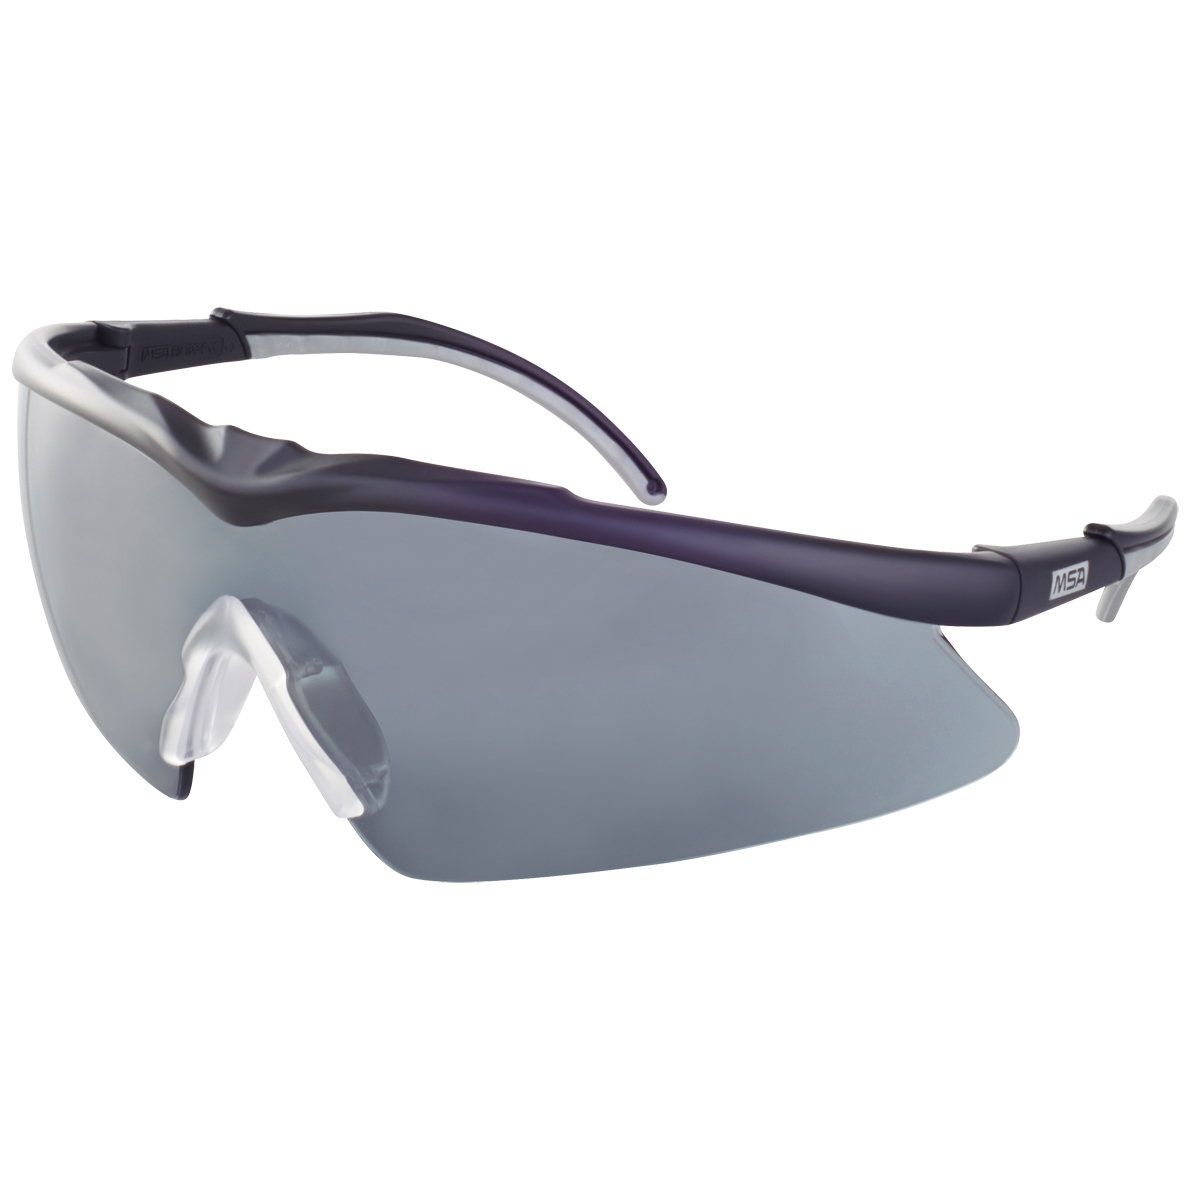 MSA Arbeitsschutzbrille Altimeter Arbeitsbrille Augenschutz Gesichtsschutz Staub 